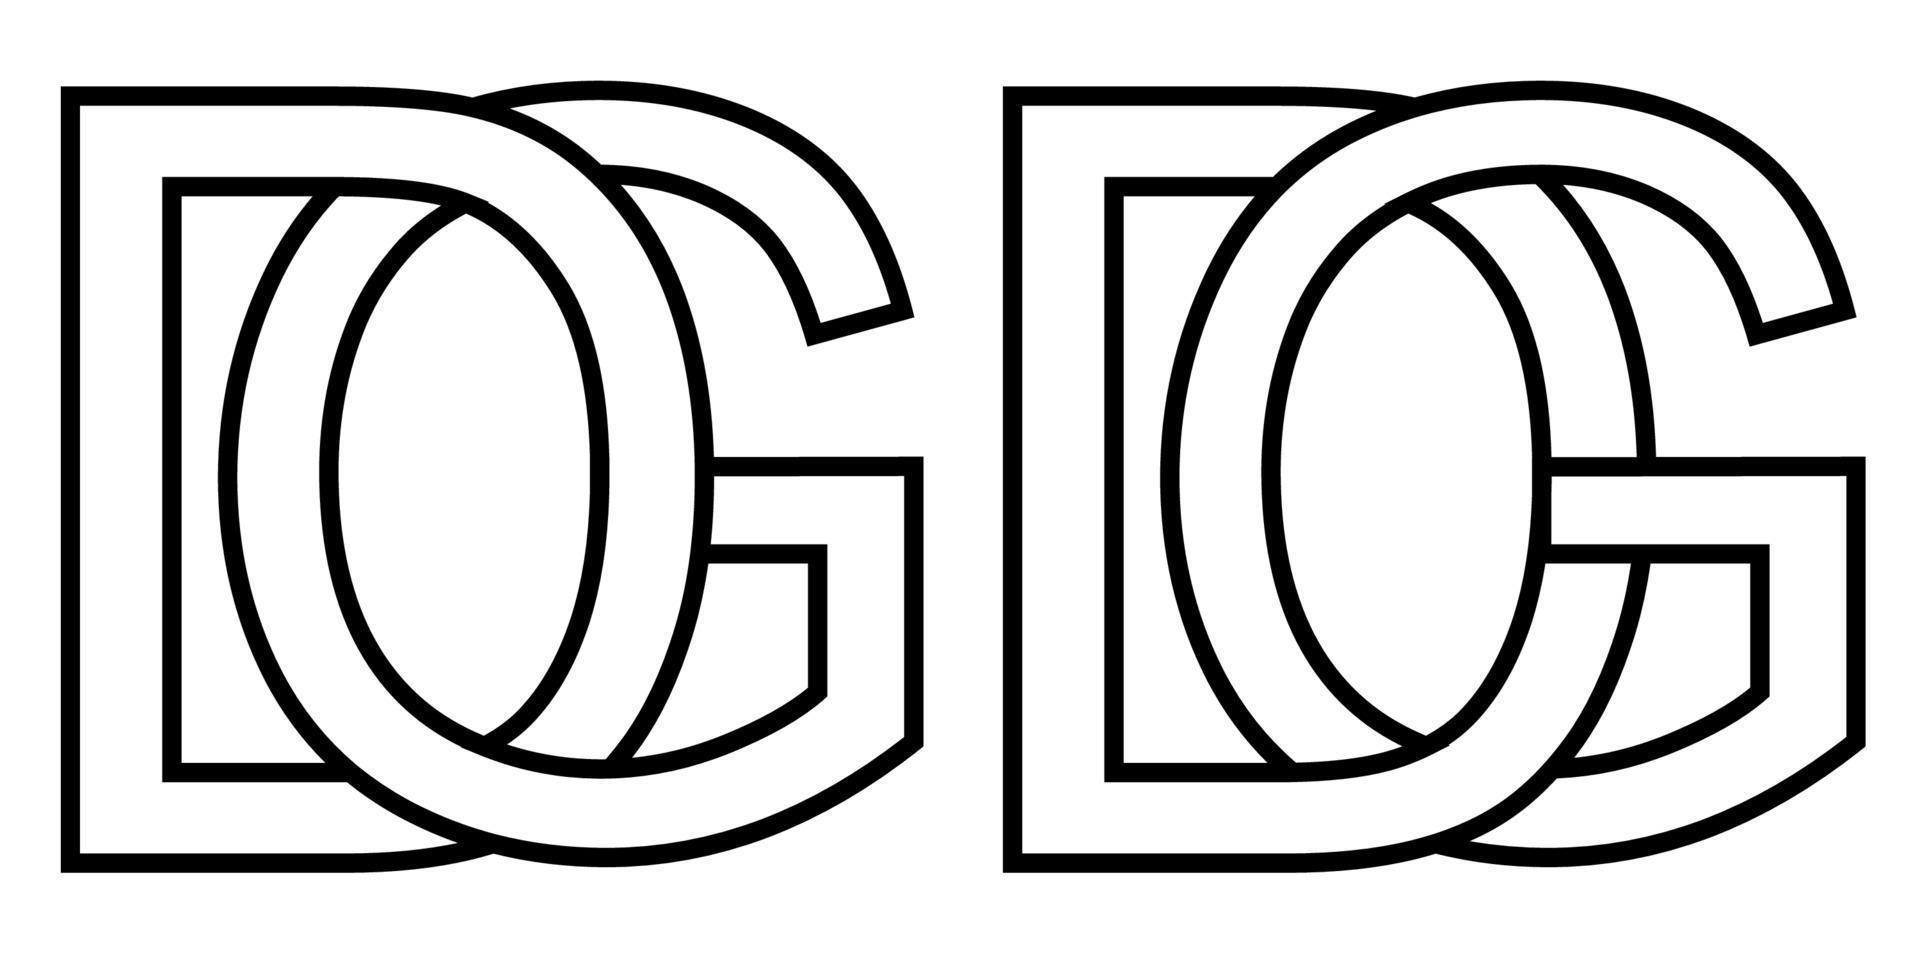 logo gd dg icono firmar dos entrelazado letras sol d, vector logo gd dg primero capital letras modelo alfabeto sol re